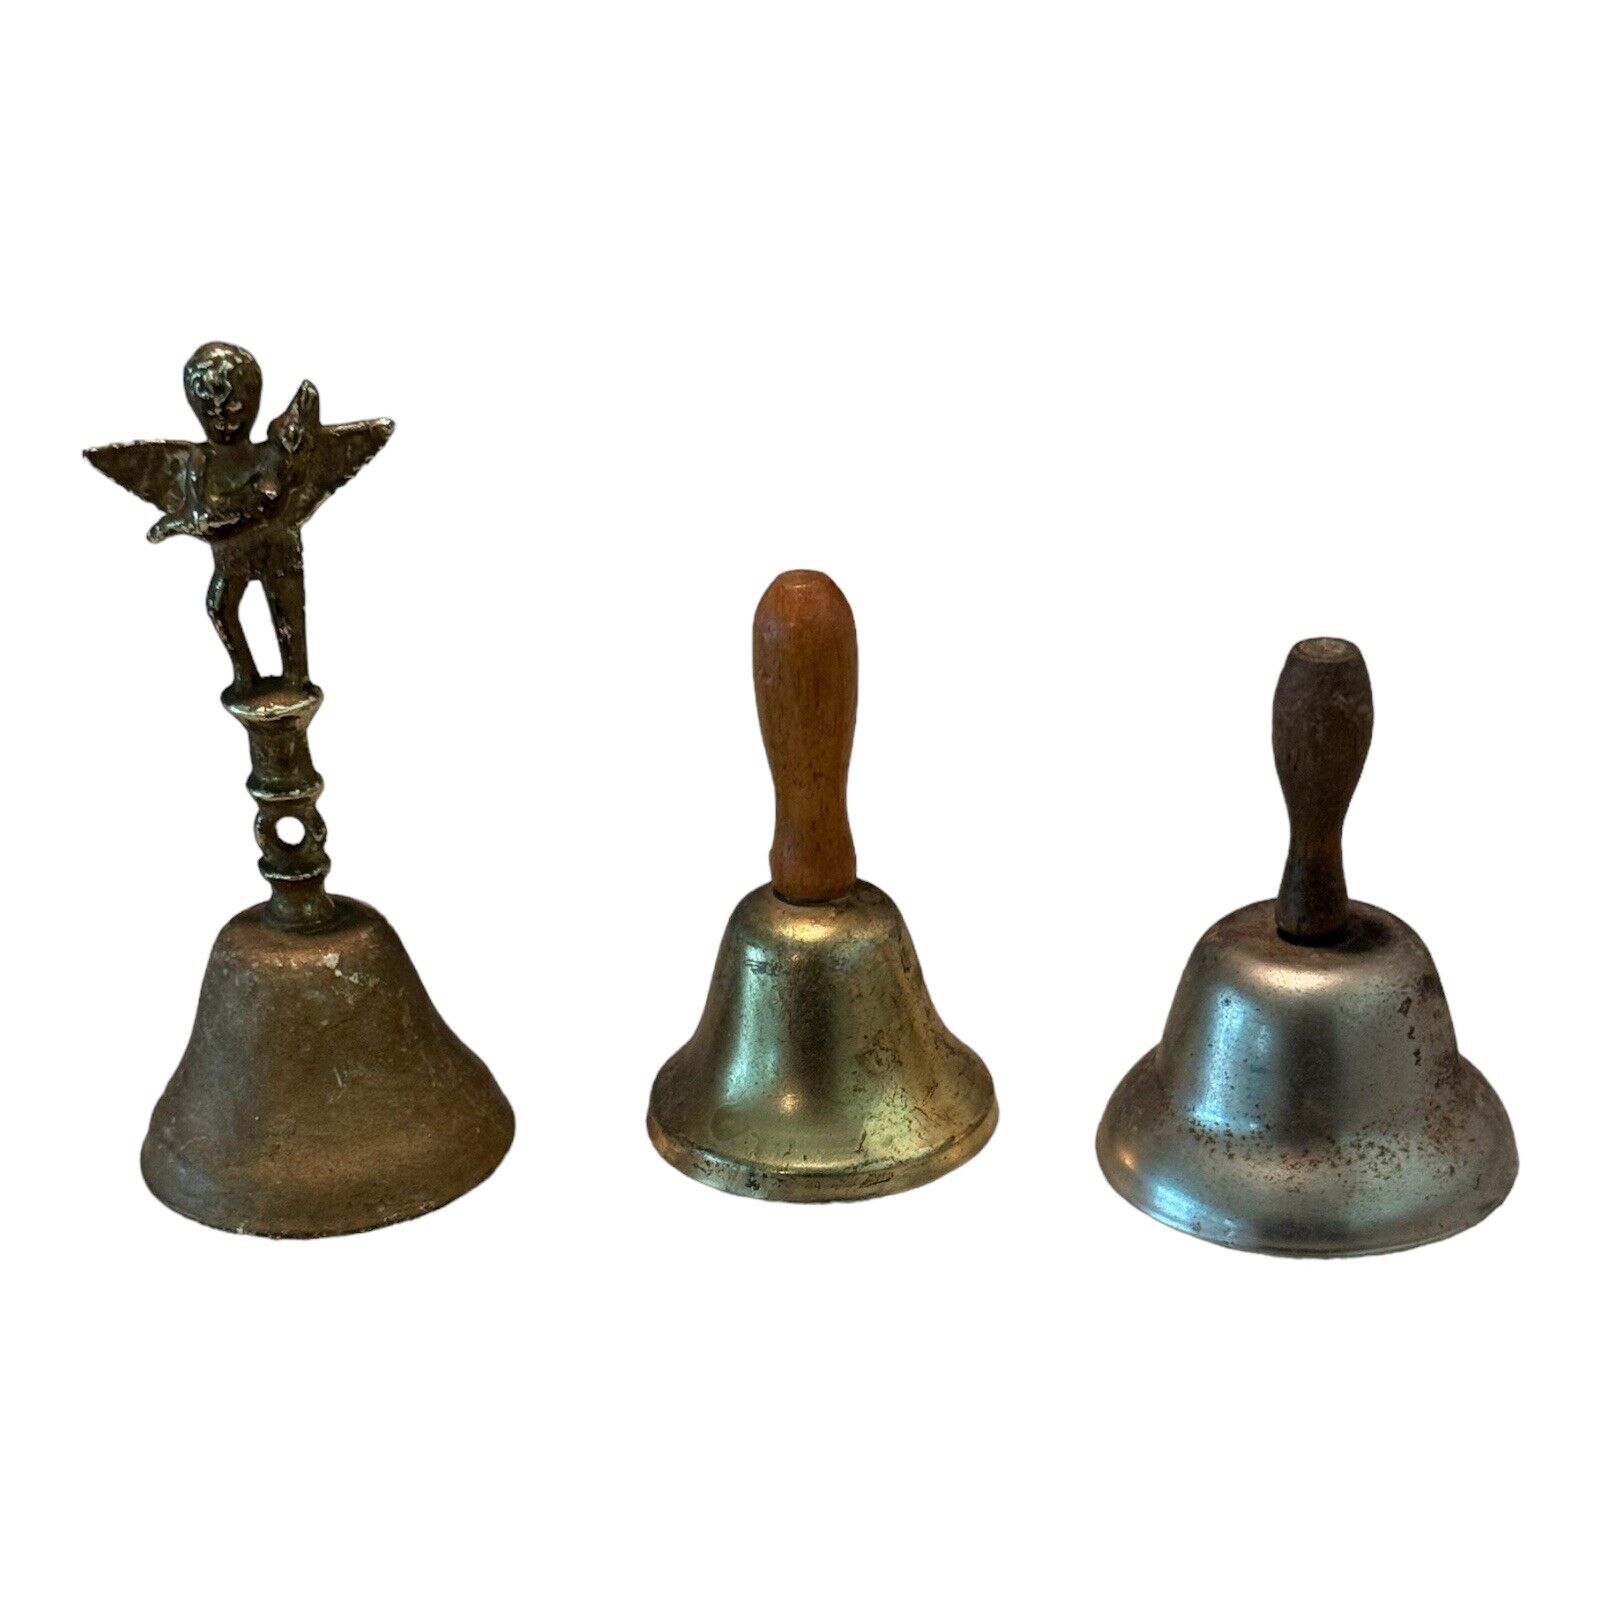 Vintage Brass Bells 3” Lot Of 3 